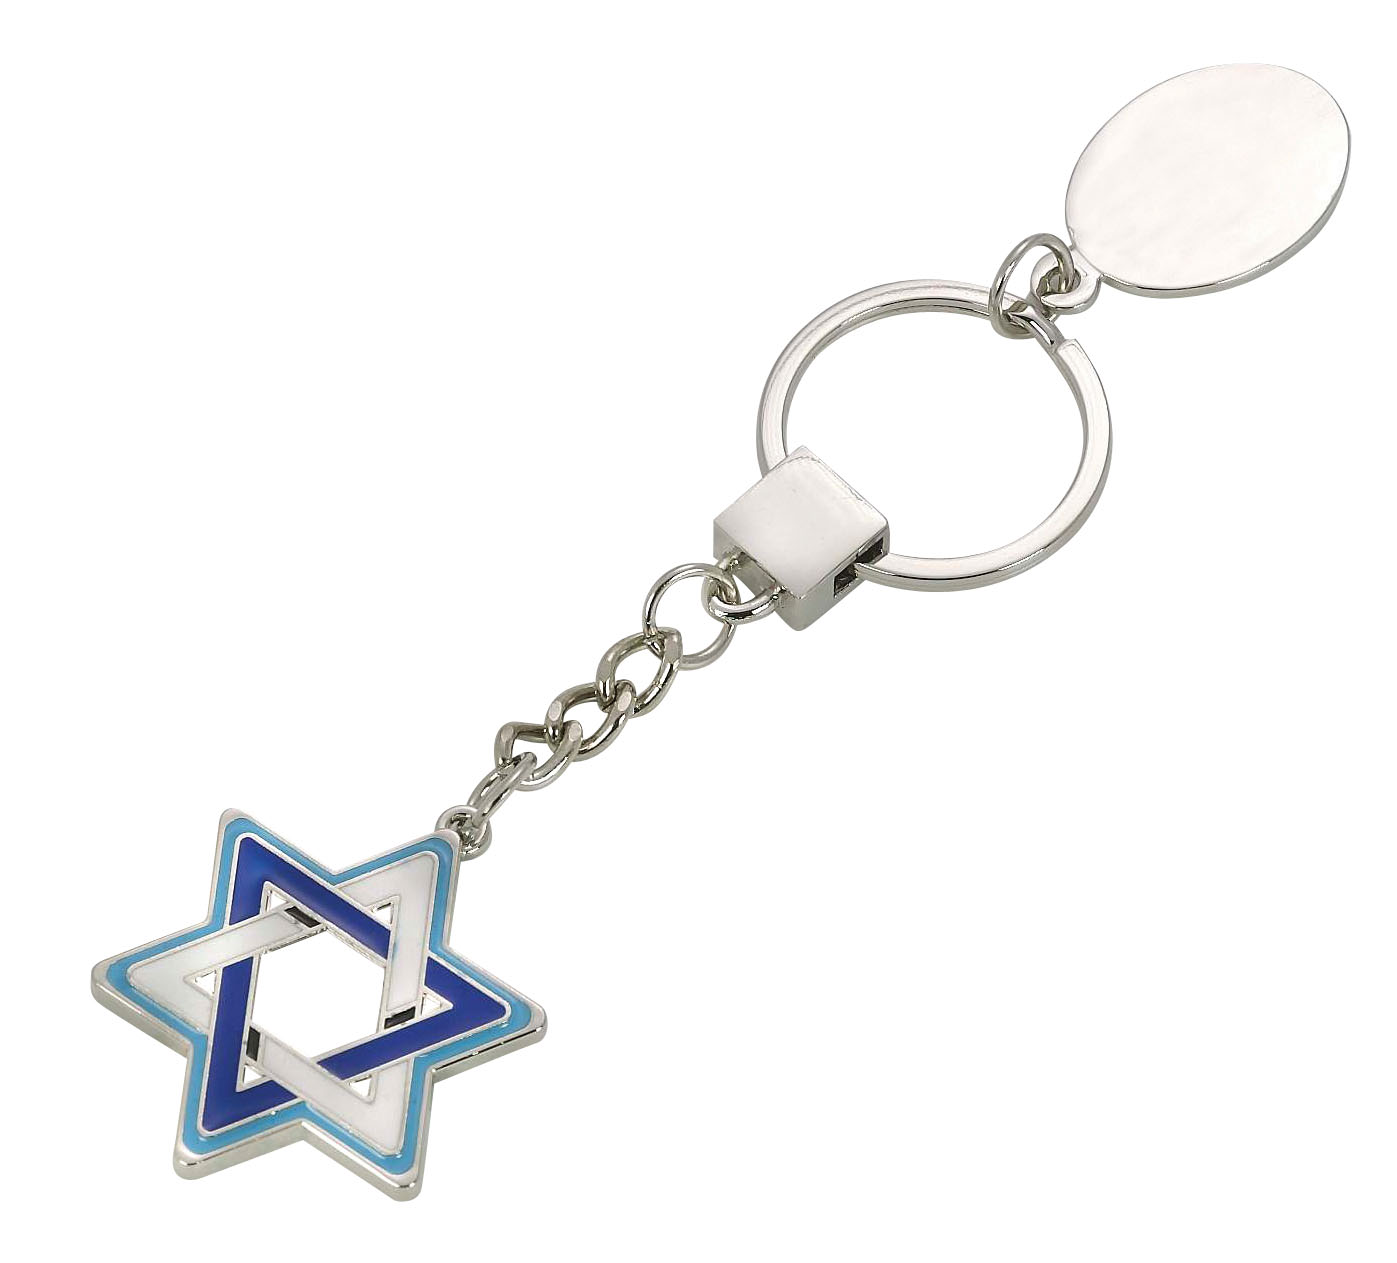 מגן דוד - מחזיק מפתחות מתכת.
דגל ישראל בשלושה צבעים.